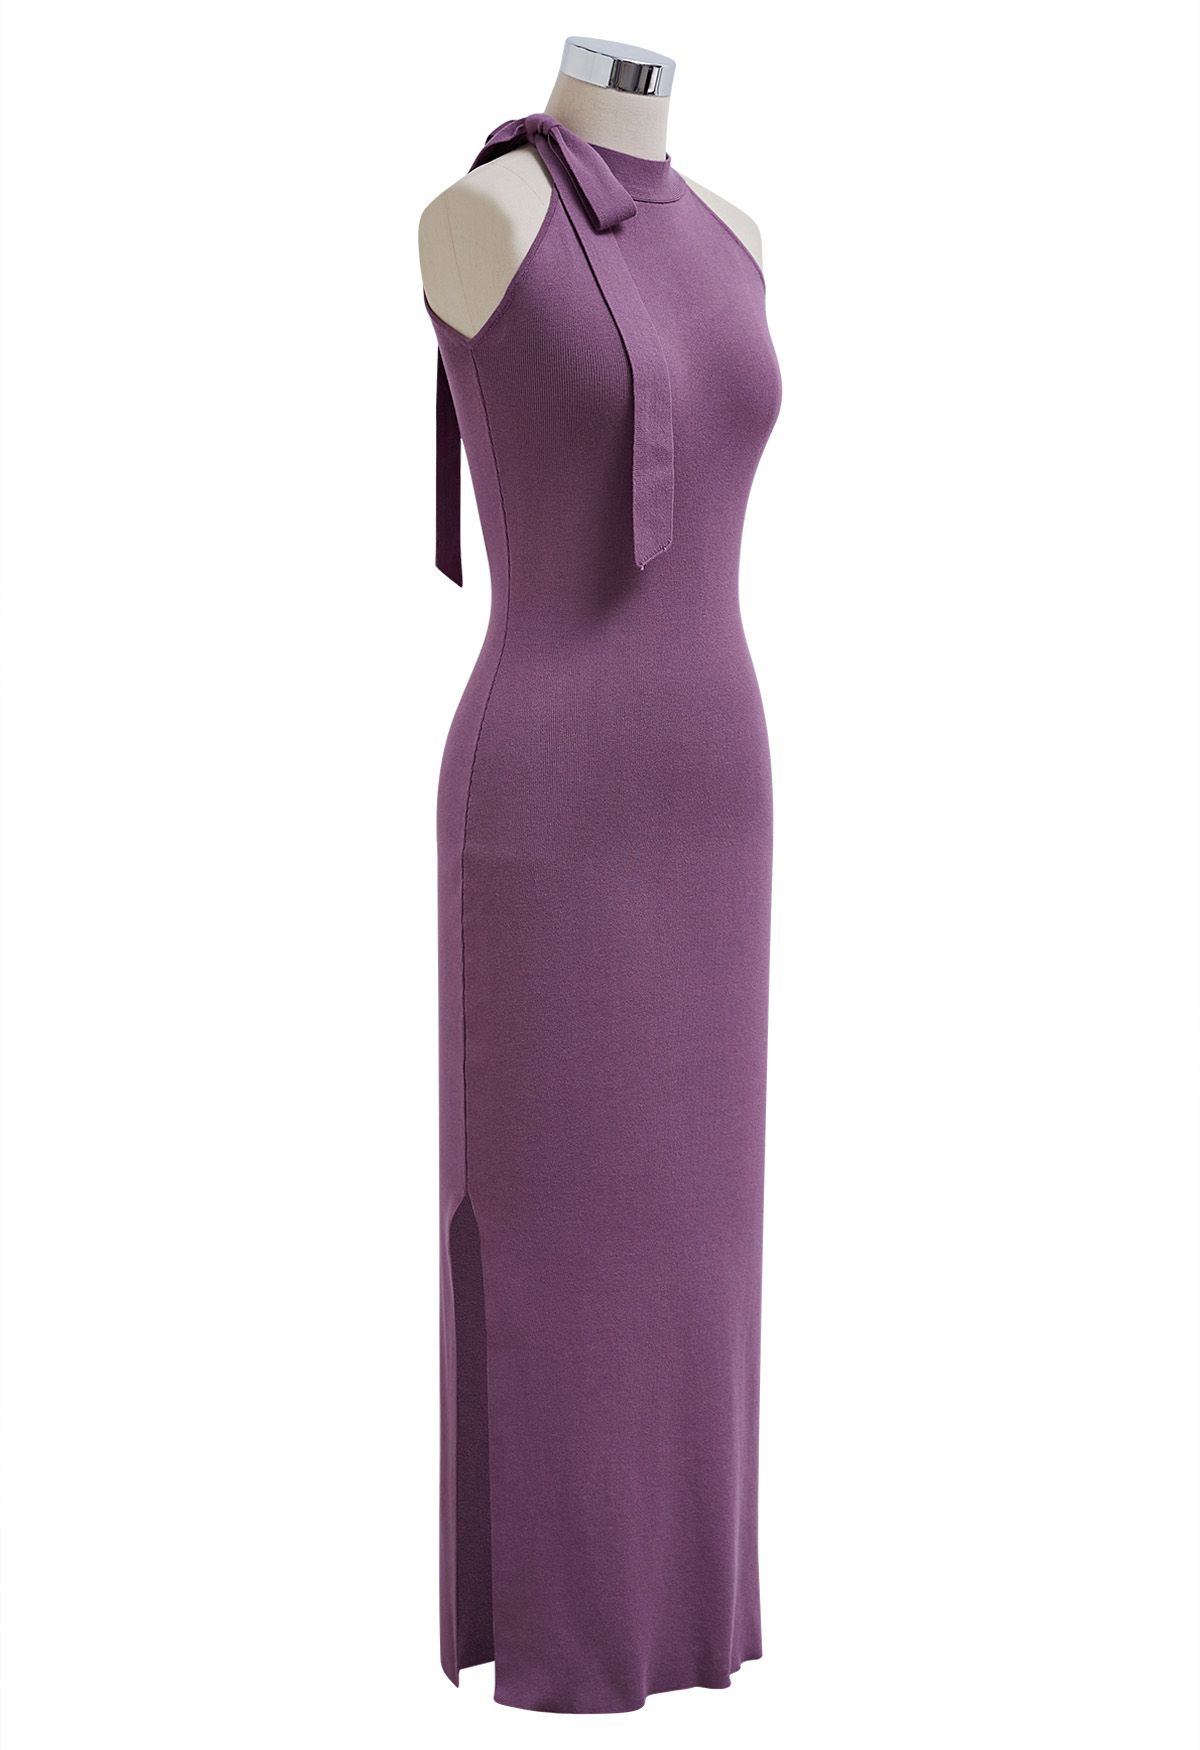 Side Bowknot Neckline Bodycon Knit Dress in Purple